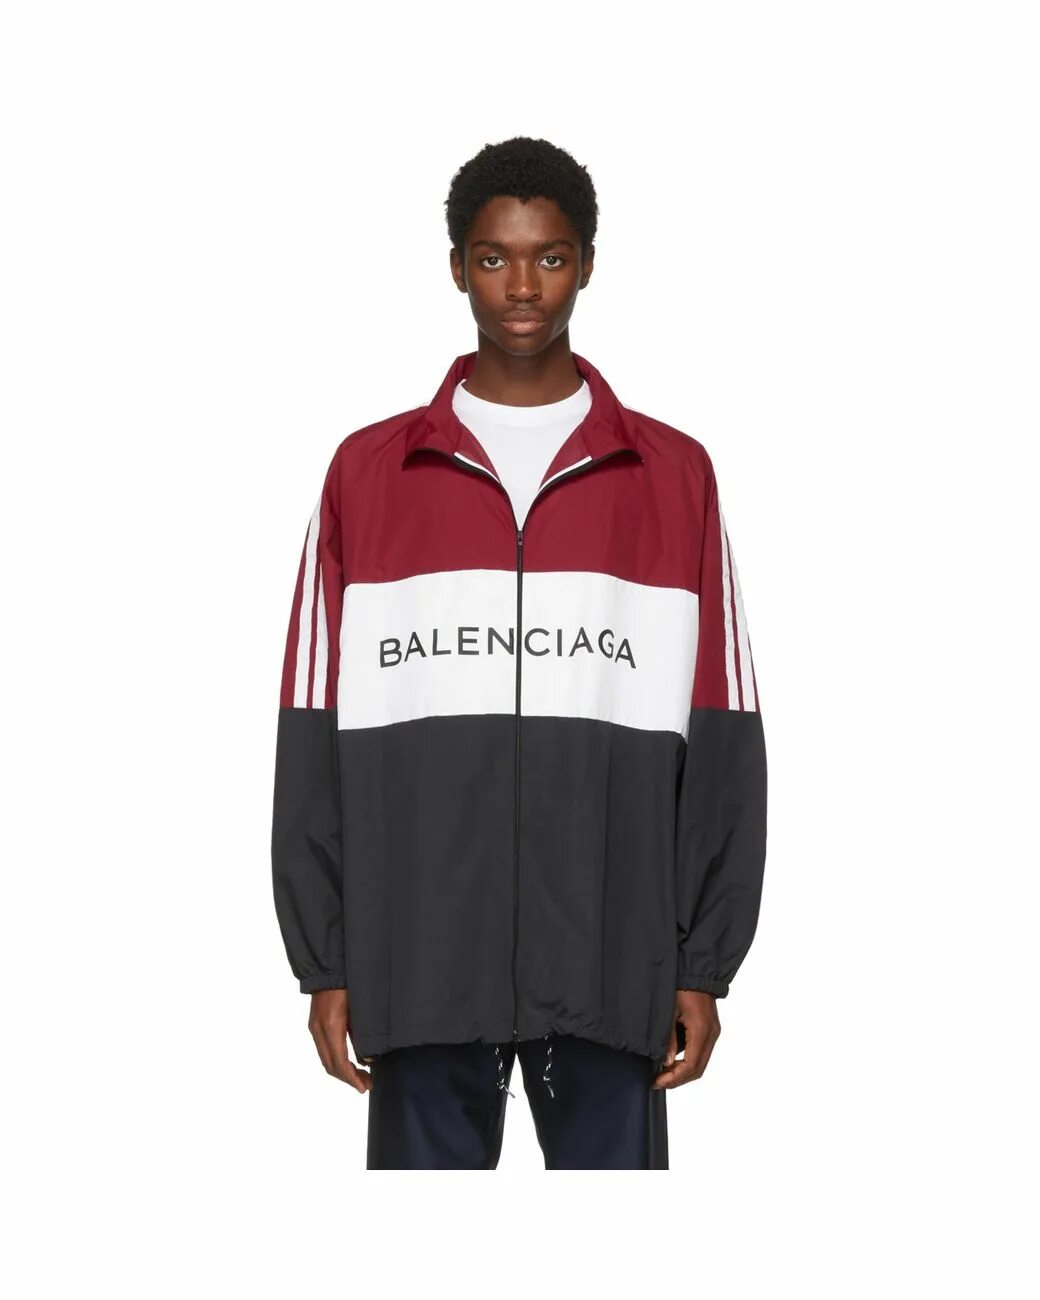 Баленсиага спортивный костюм. Balenciaga logo track Jacket. Balenciaga Jacket. Баленсиага спортивный костюм мужской оригинал. Balenciaga куртка мужская.